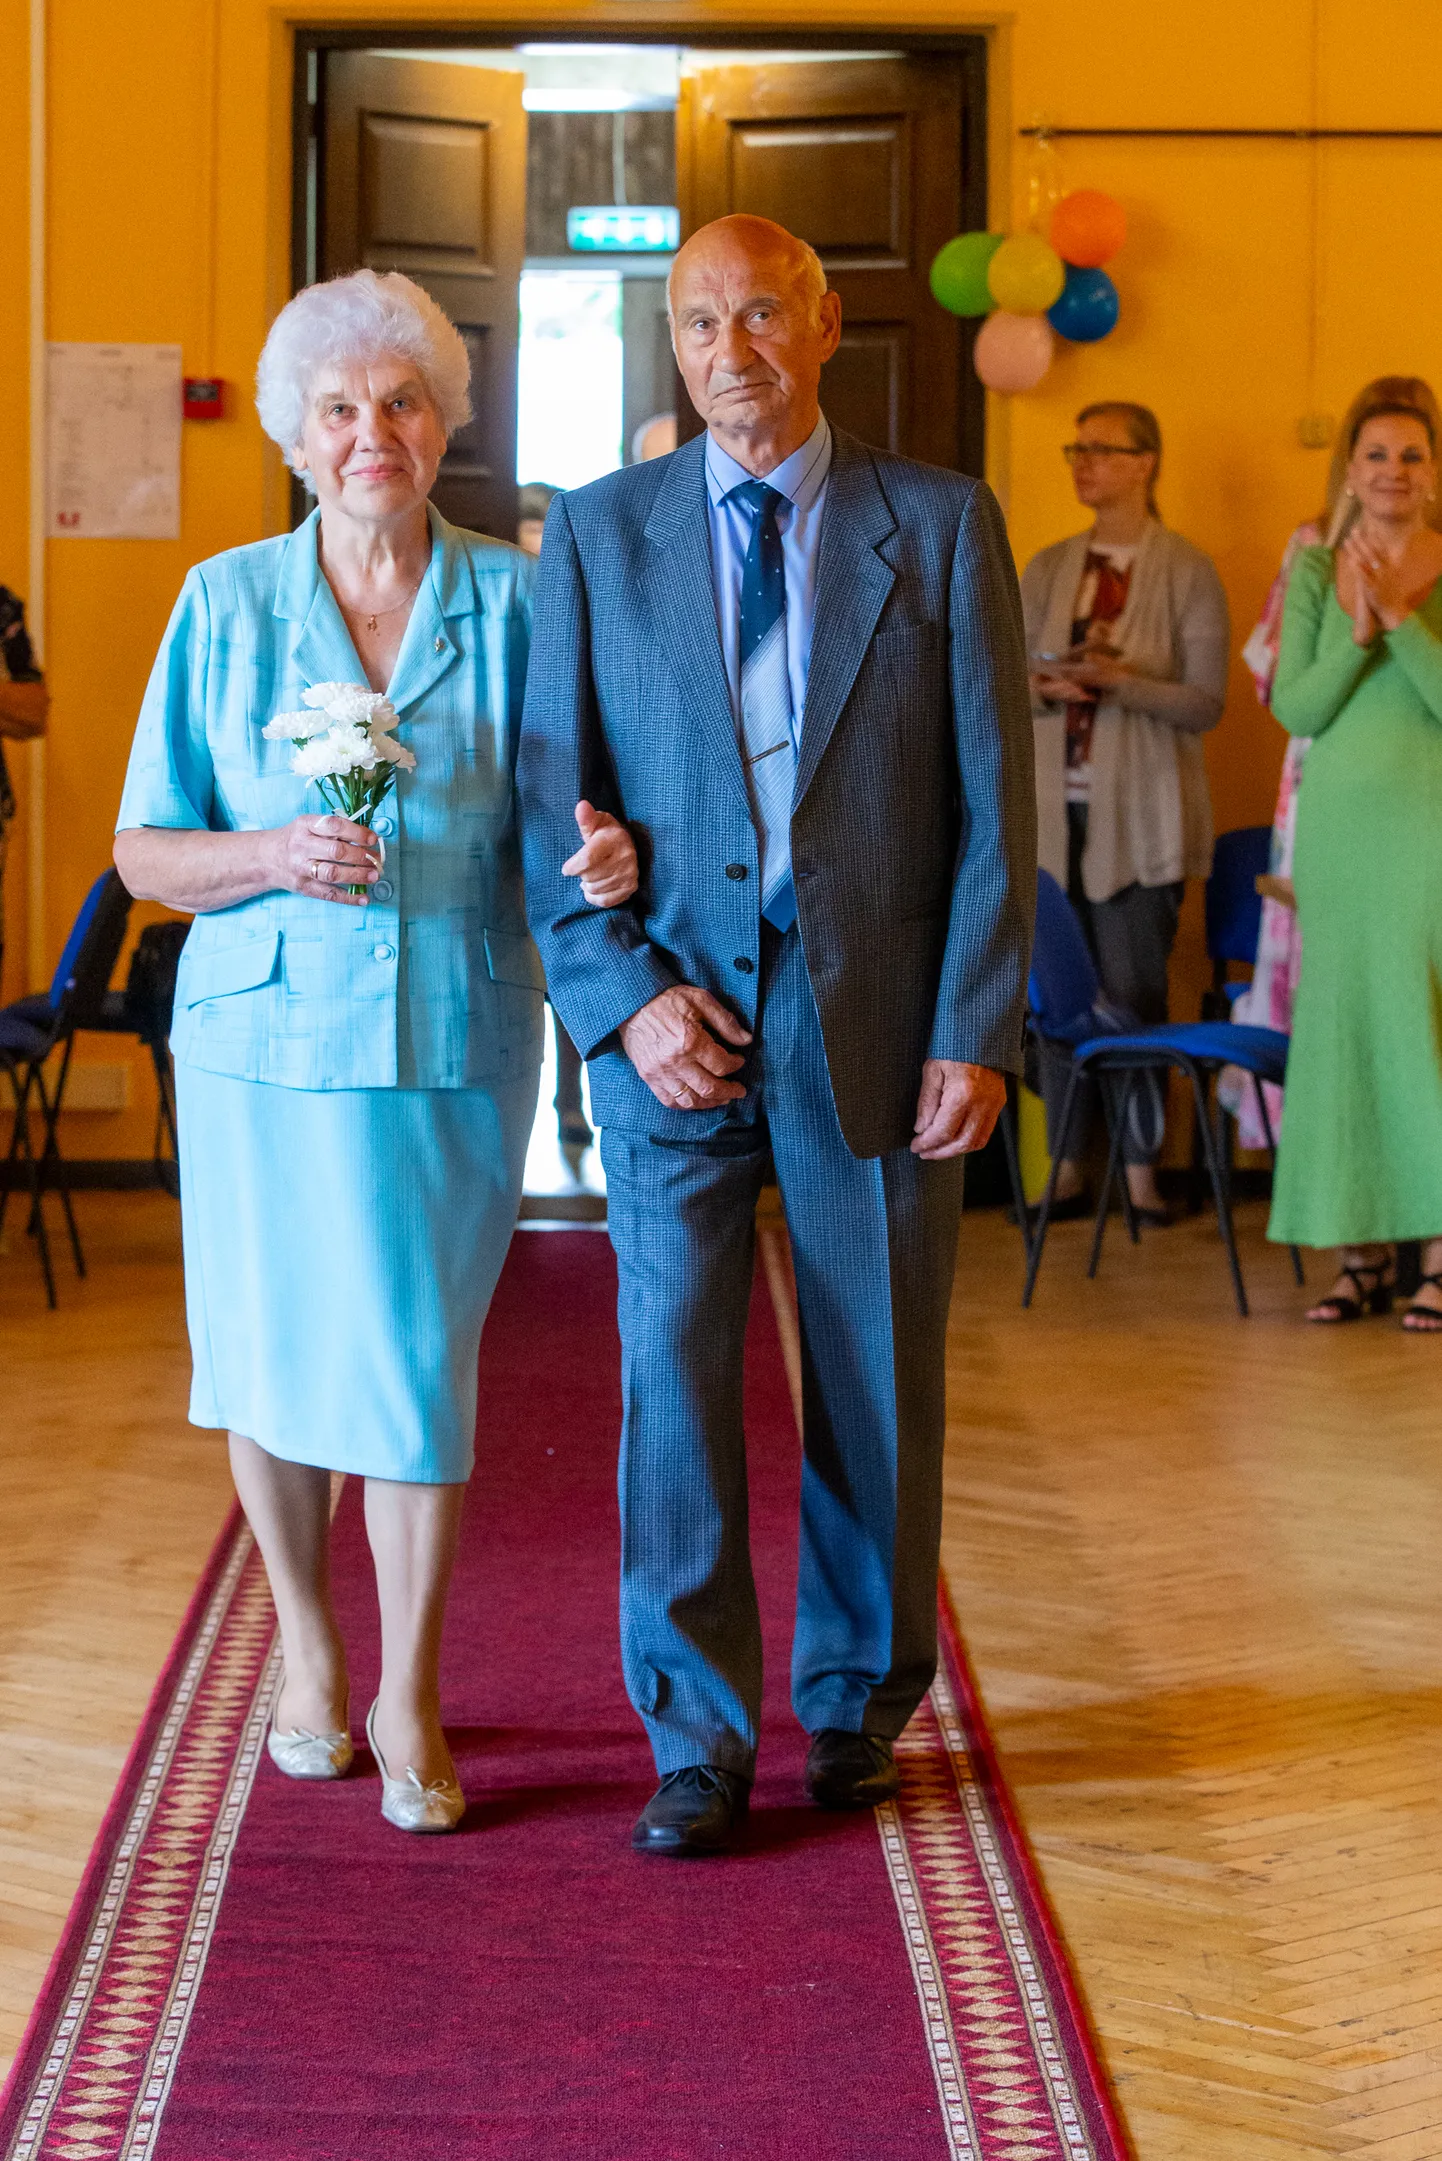 Гале и Алексей Поповы вошли в зал Таммикуского народного дома под свадебный марш Мендельсона, который должен был напомнить им о прекрасных мгновениях 55-летней давности.